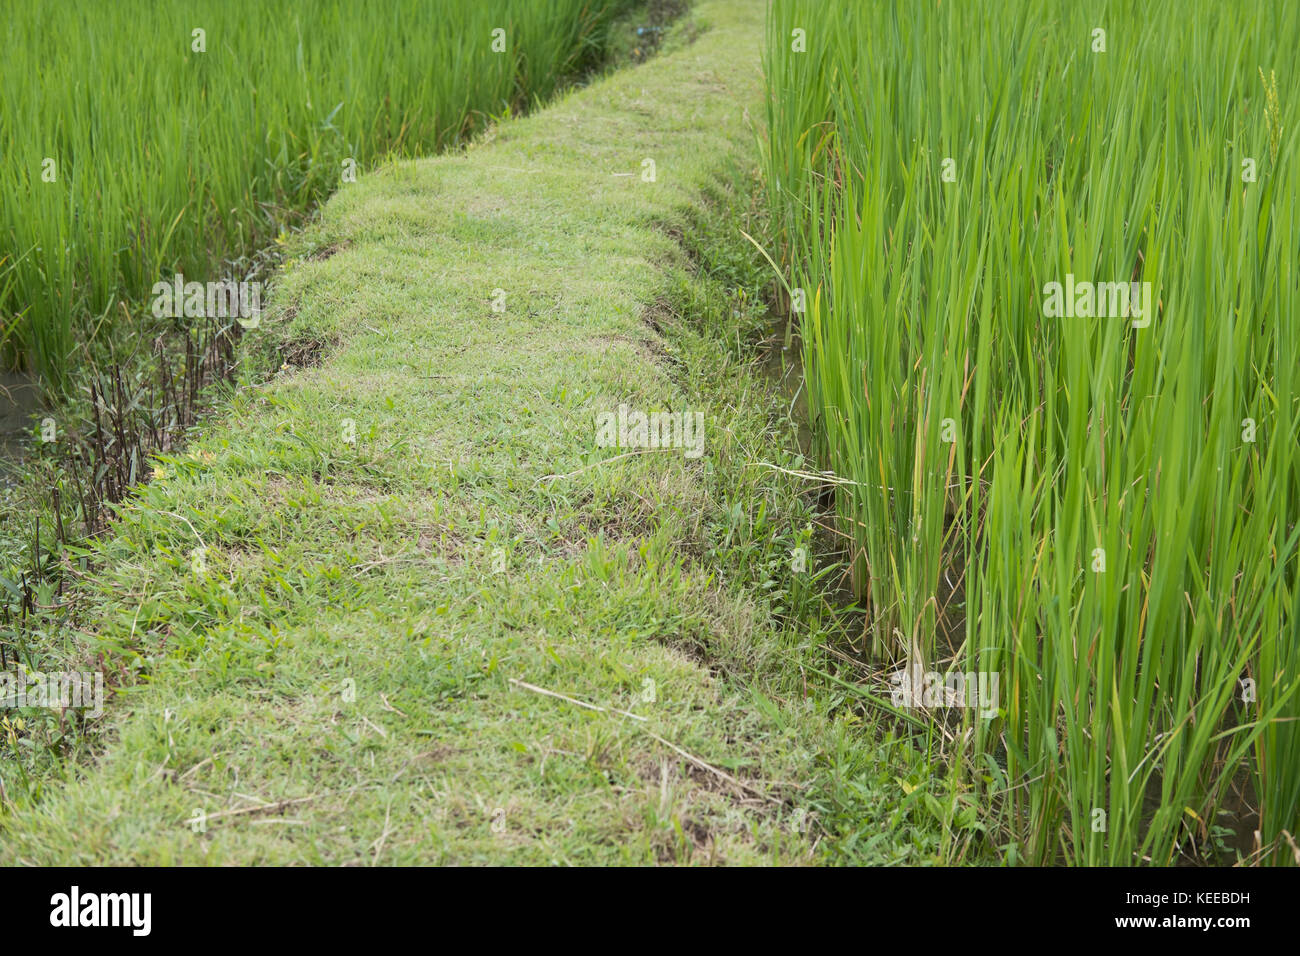 Gehweg zwischen grünen Reis im Reisfeld. Plantation, Bauernhof, Landwirtschaft Konzept Stockfoto